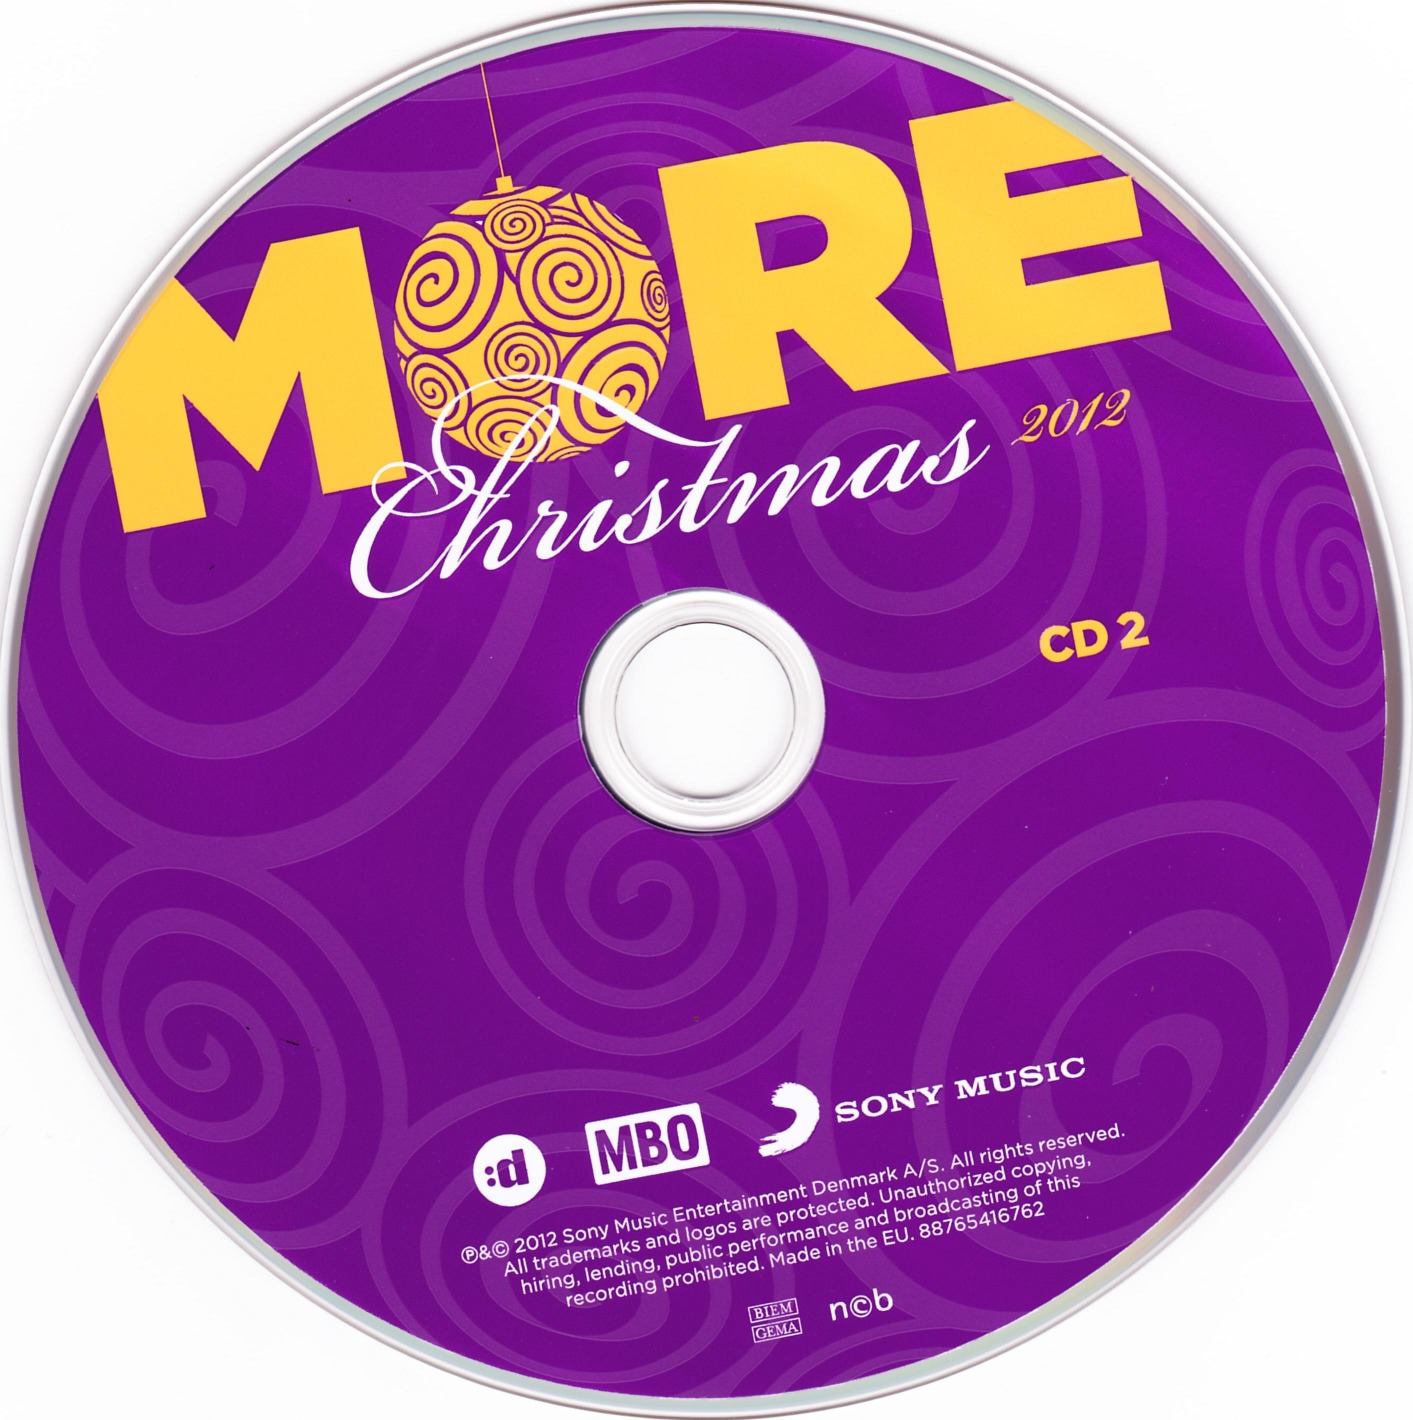 More Christmas 2012 cd2